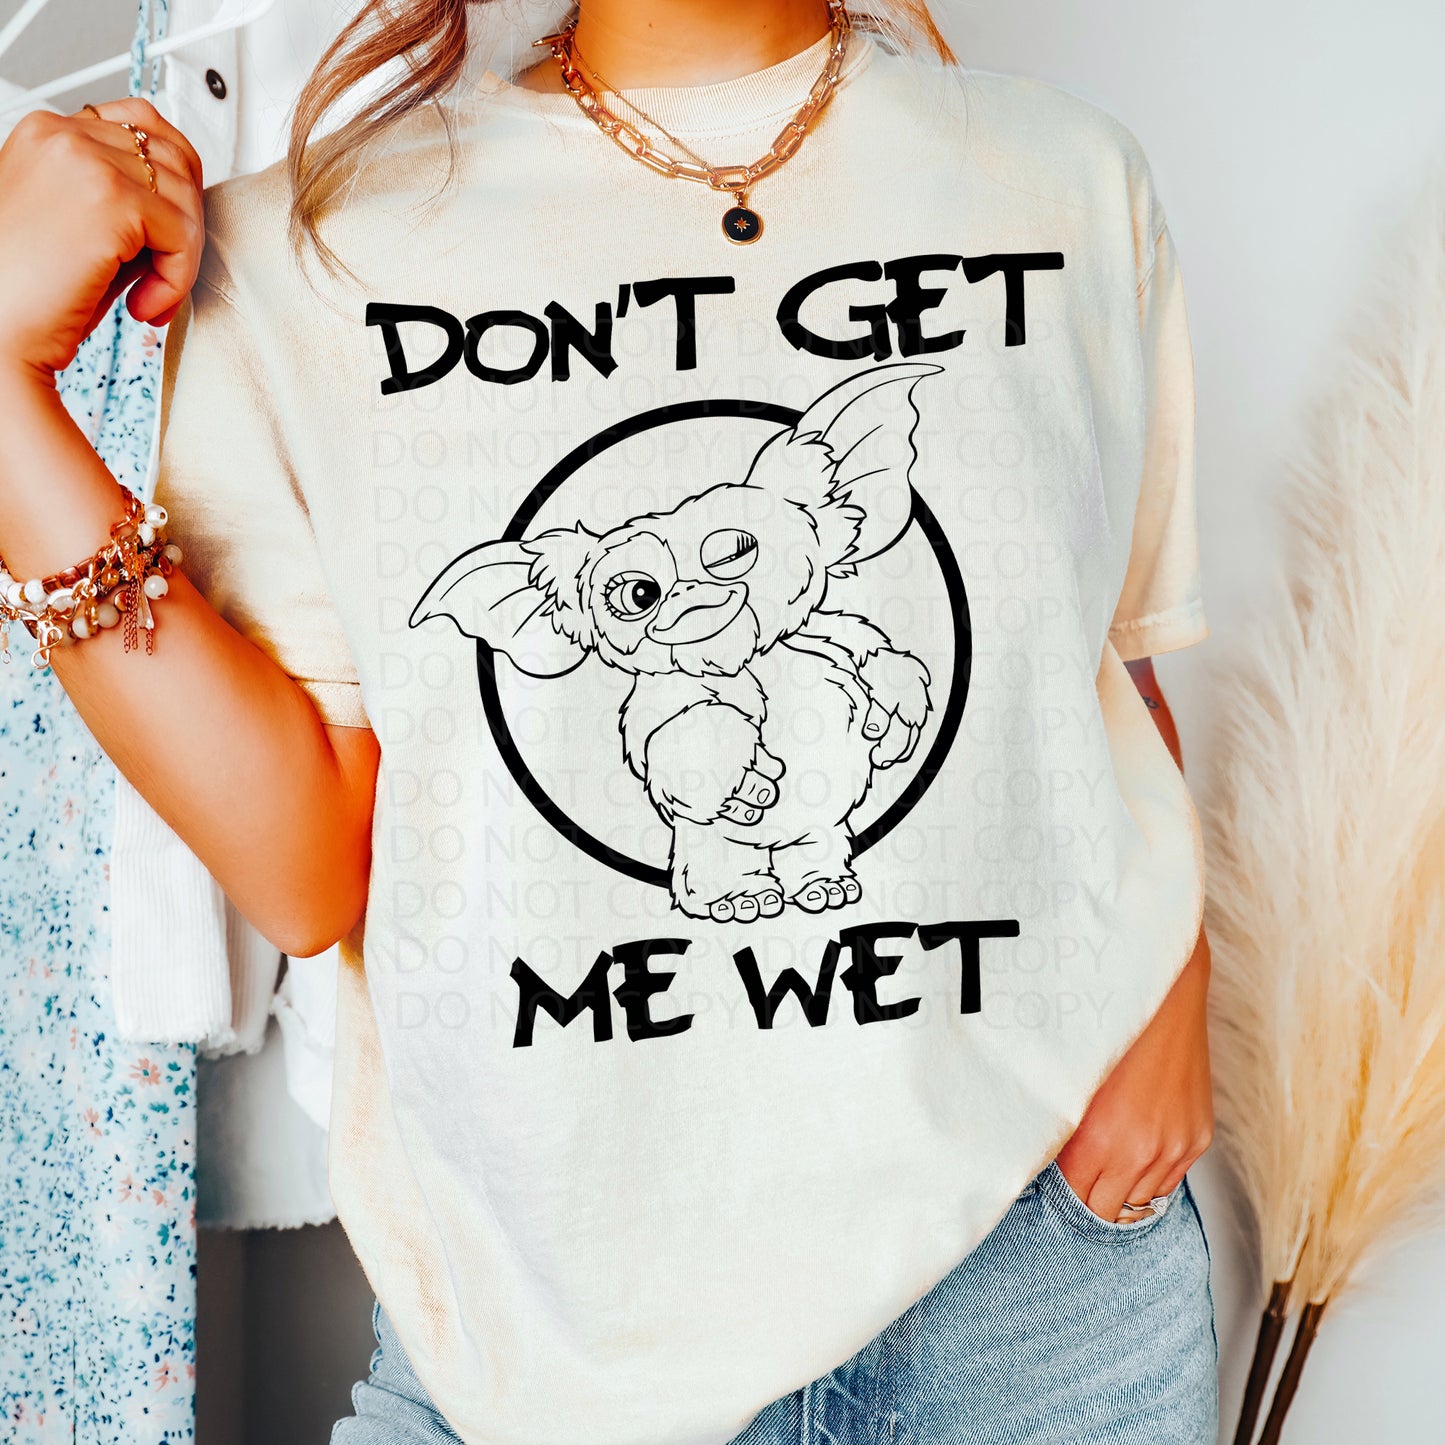 Don't Get Me Wet DTF & Sublimation Transfer